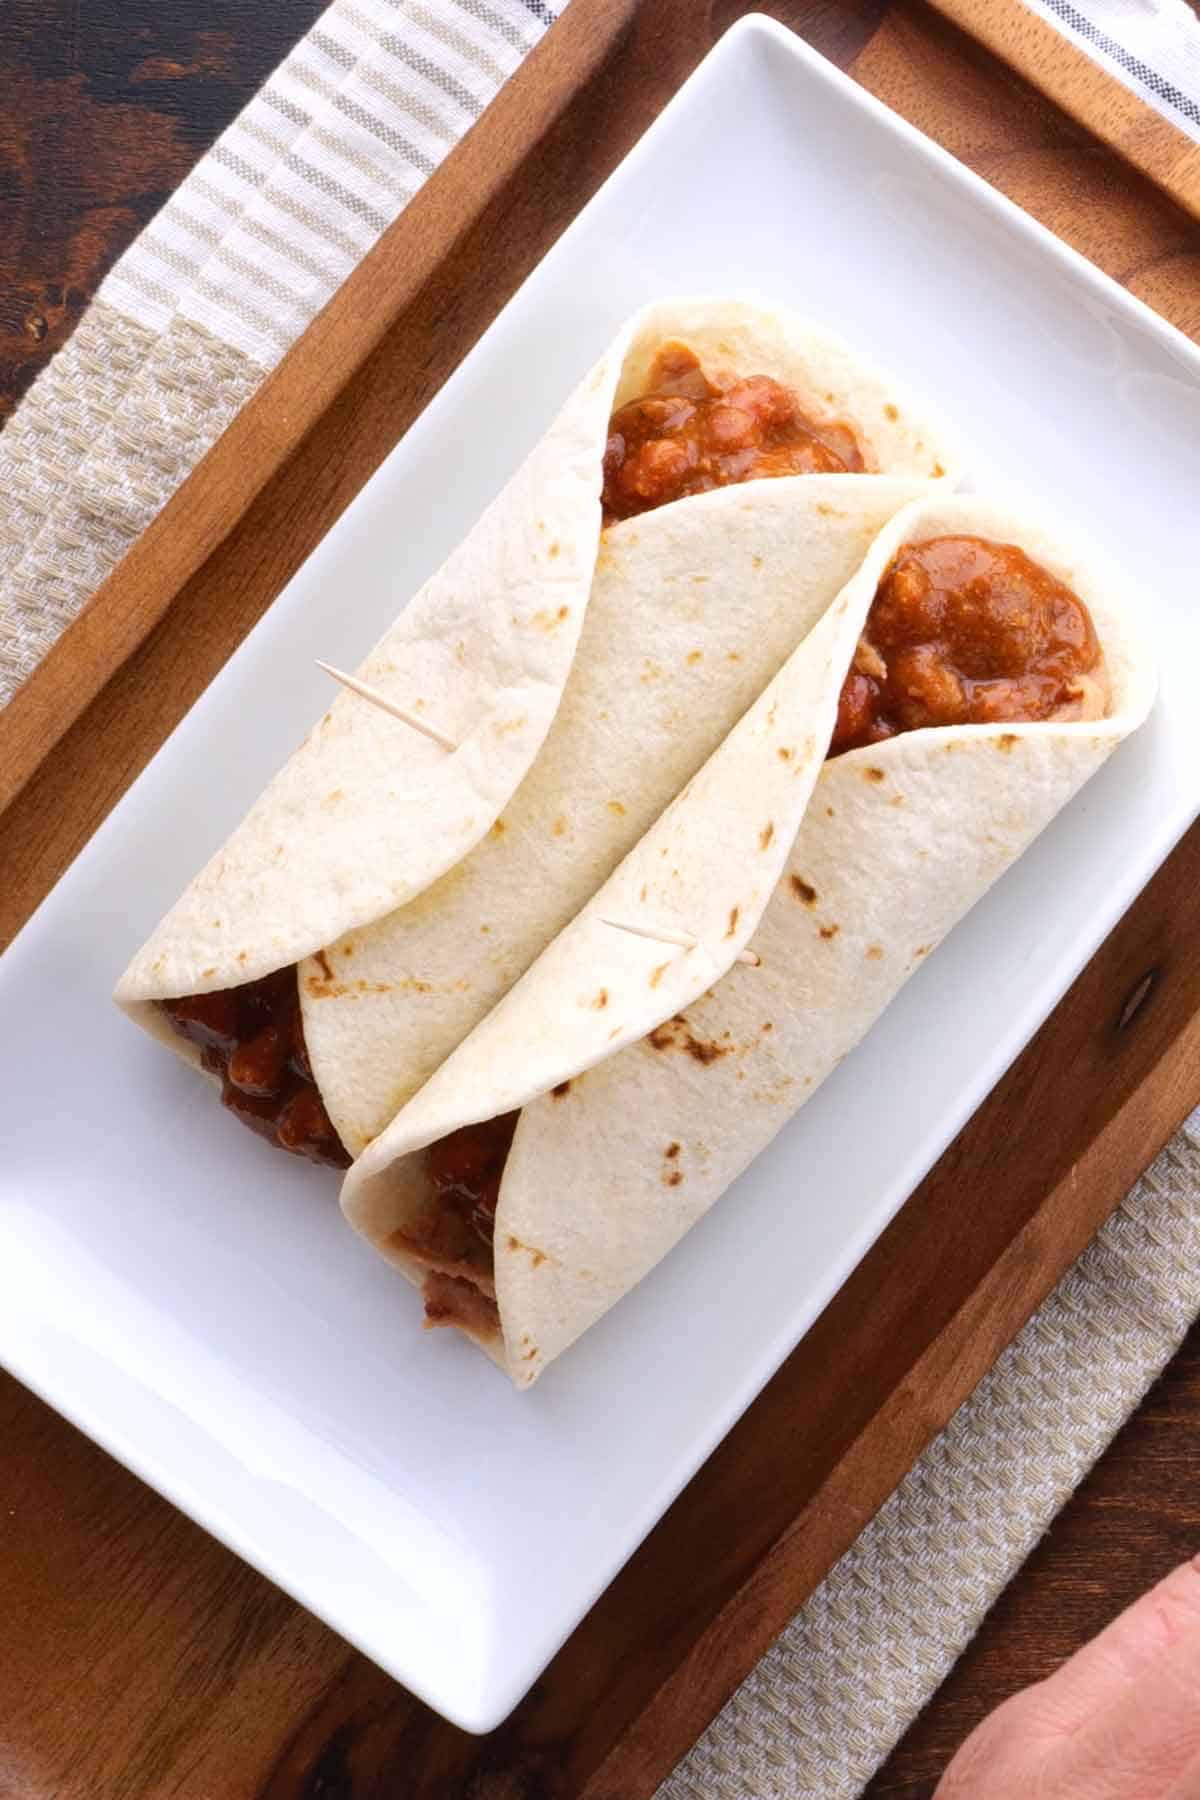 Easy Freezer-friendly chili burritos